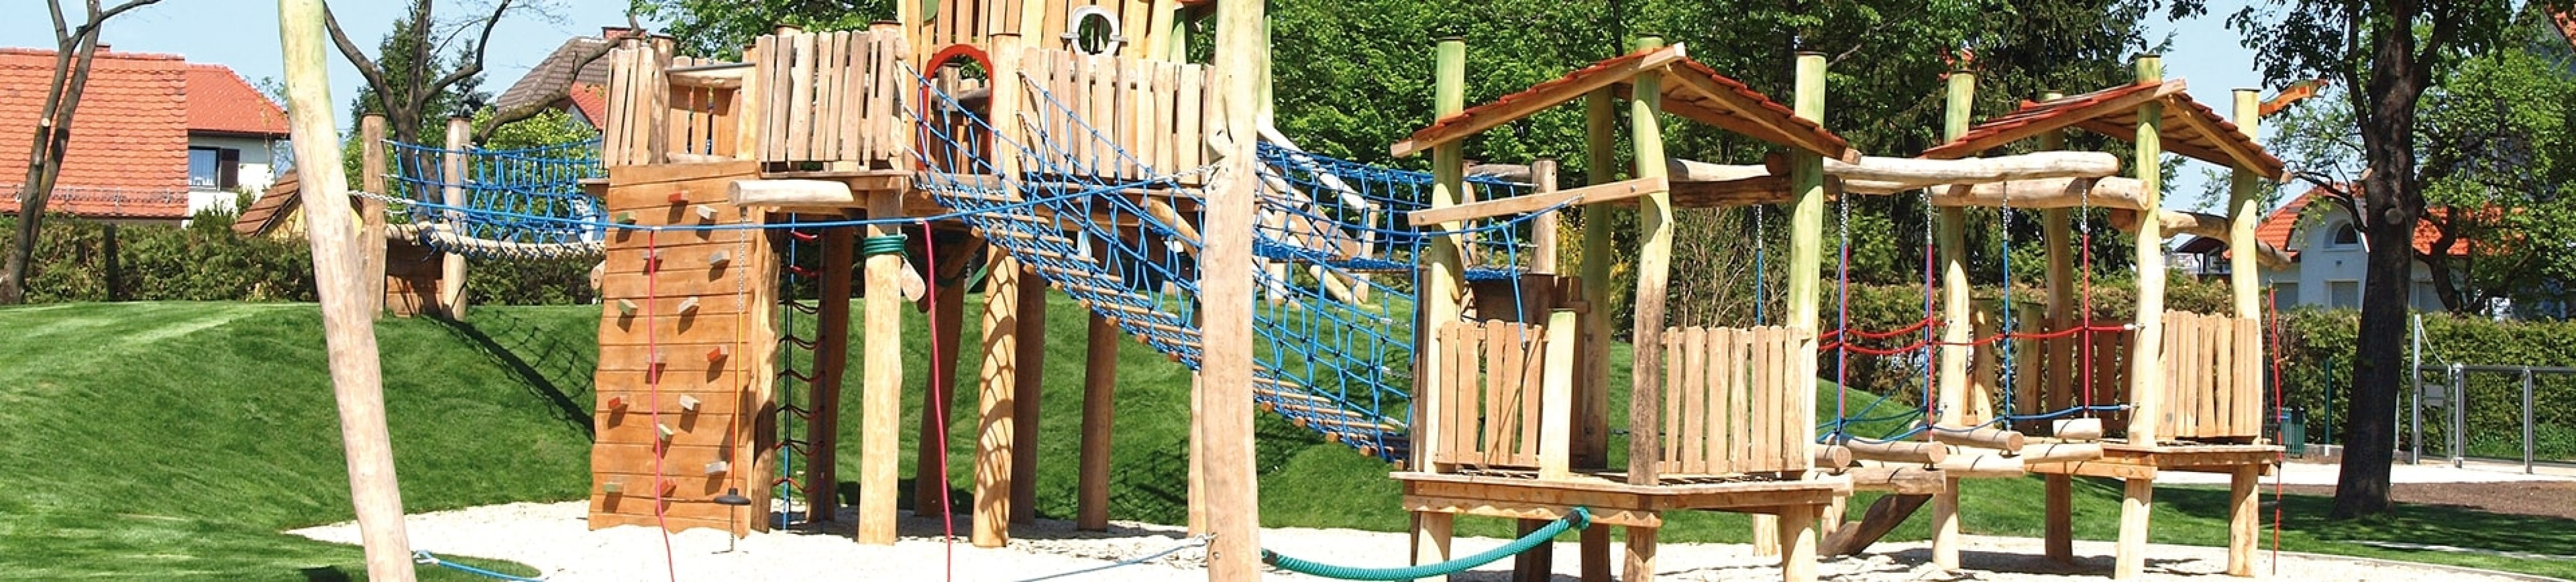 turmanlagen-spielanlage-kletterwand-netzbrücke-robinienholz-natur